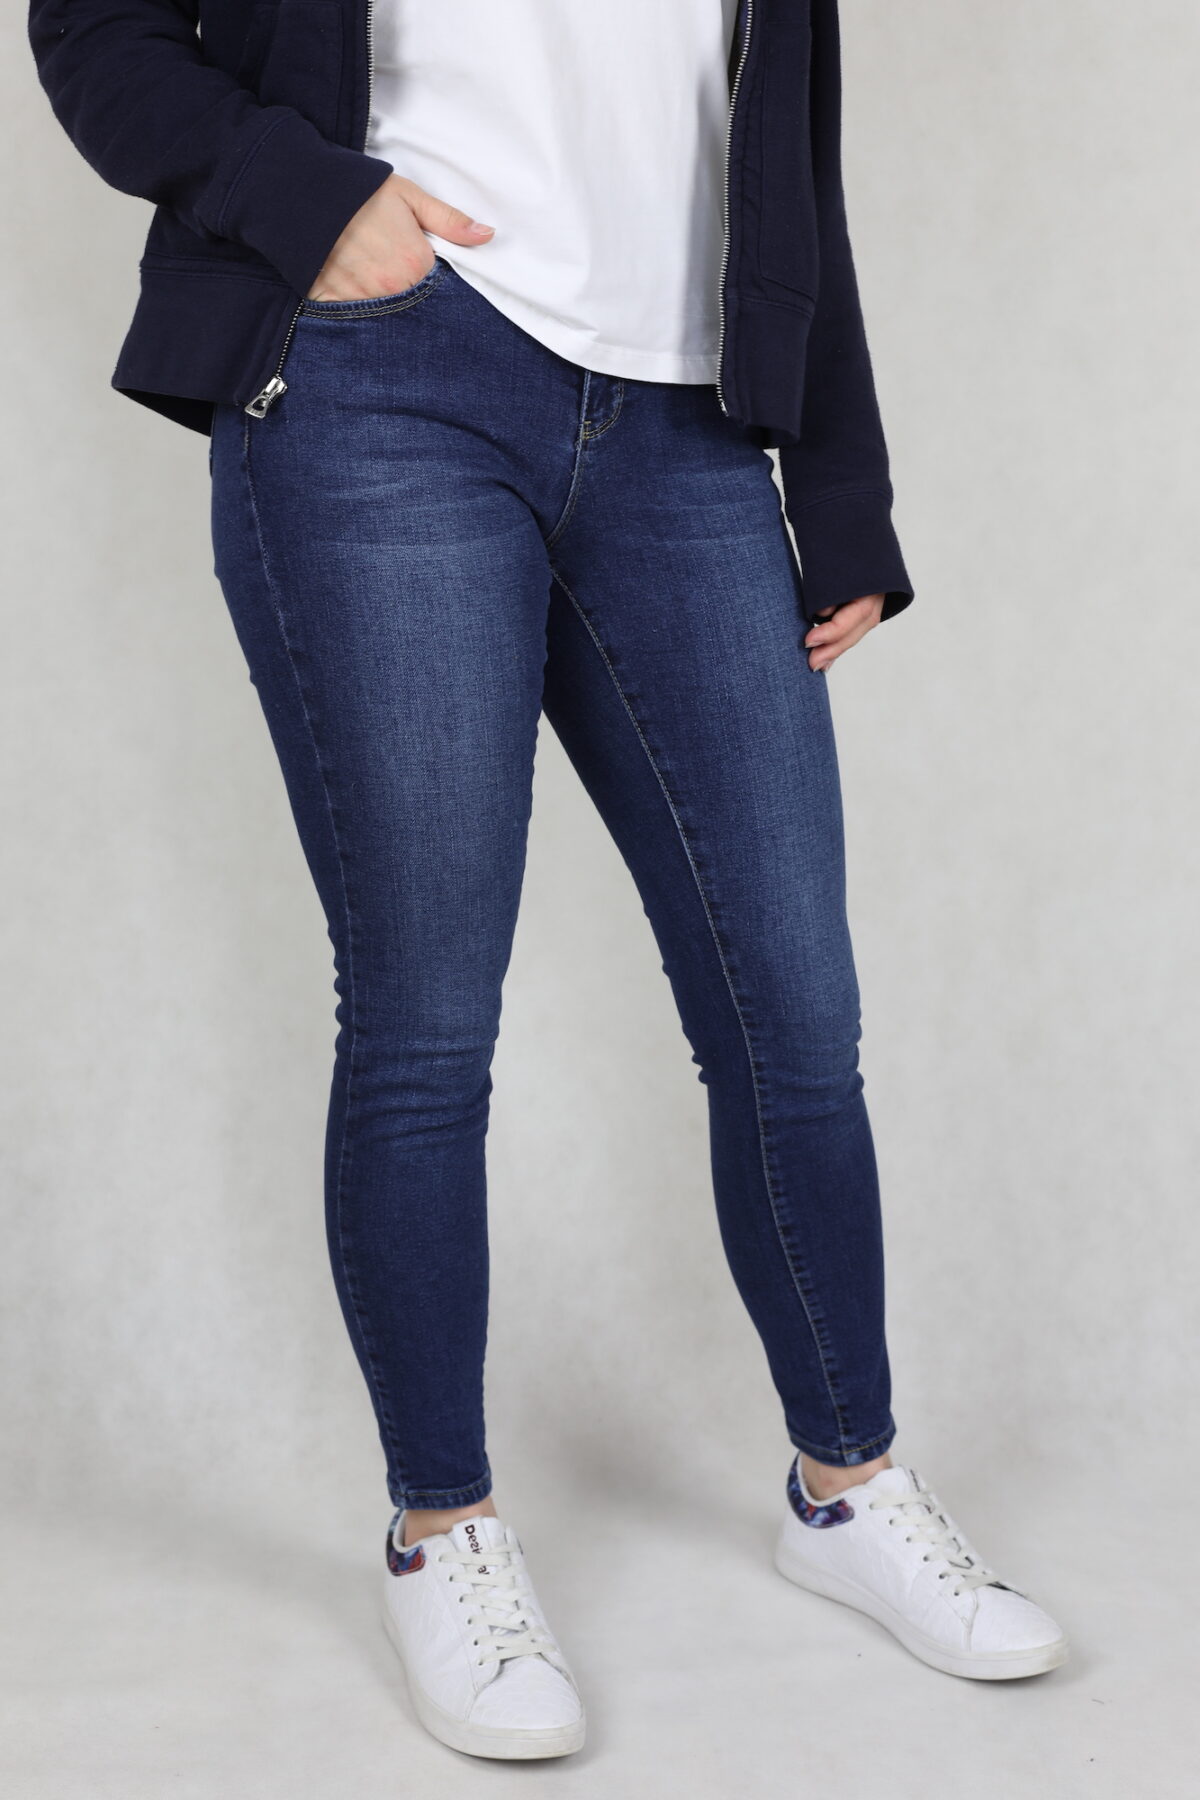 Spodnie jeansowe damskie, ciemnoniebieskie, przetarte, nogawka zwezana